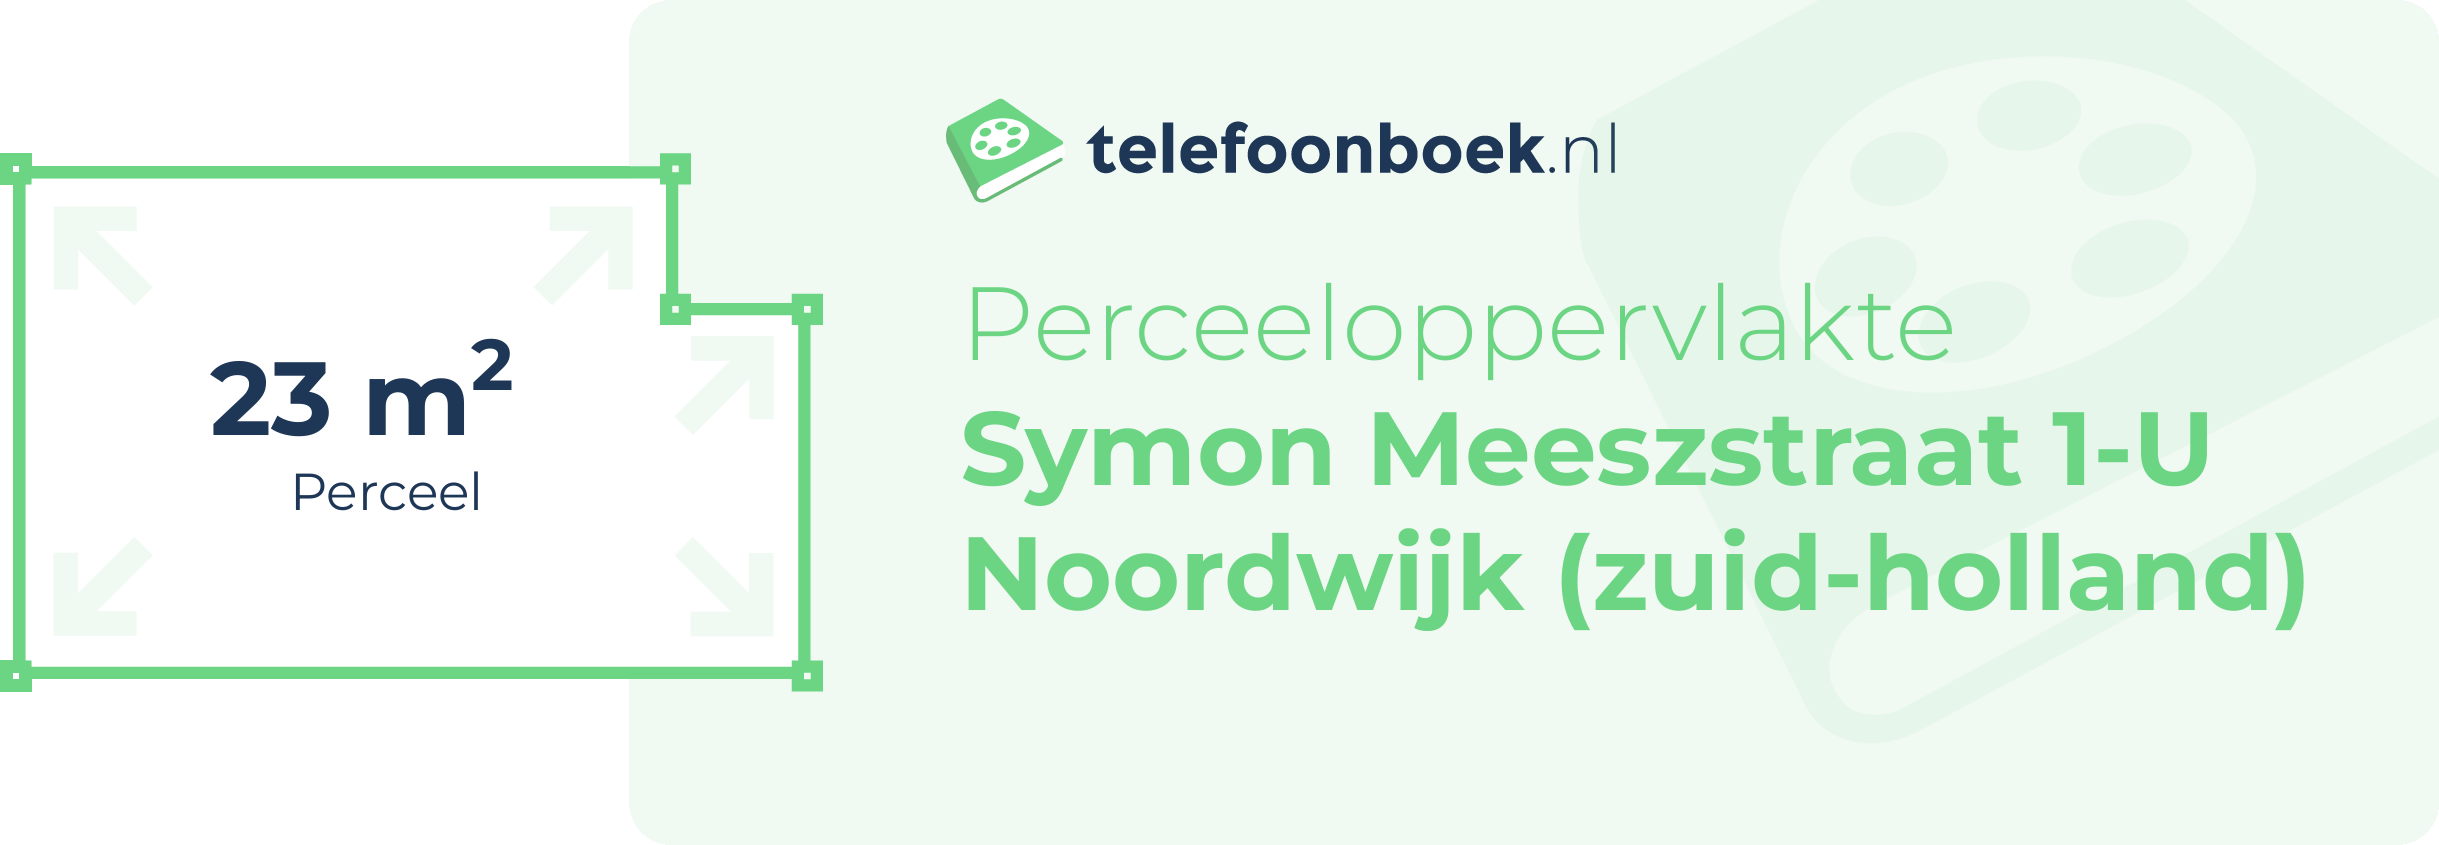 Perceeloppervlakte Symon Meeszstraat 1-U Noordwijk (Zuid-Holland)